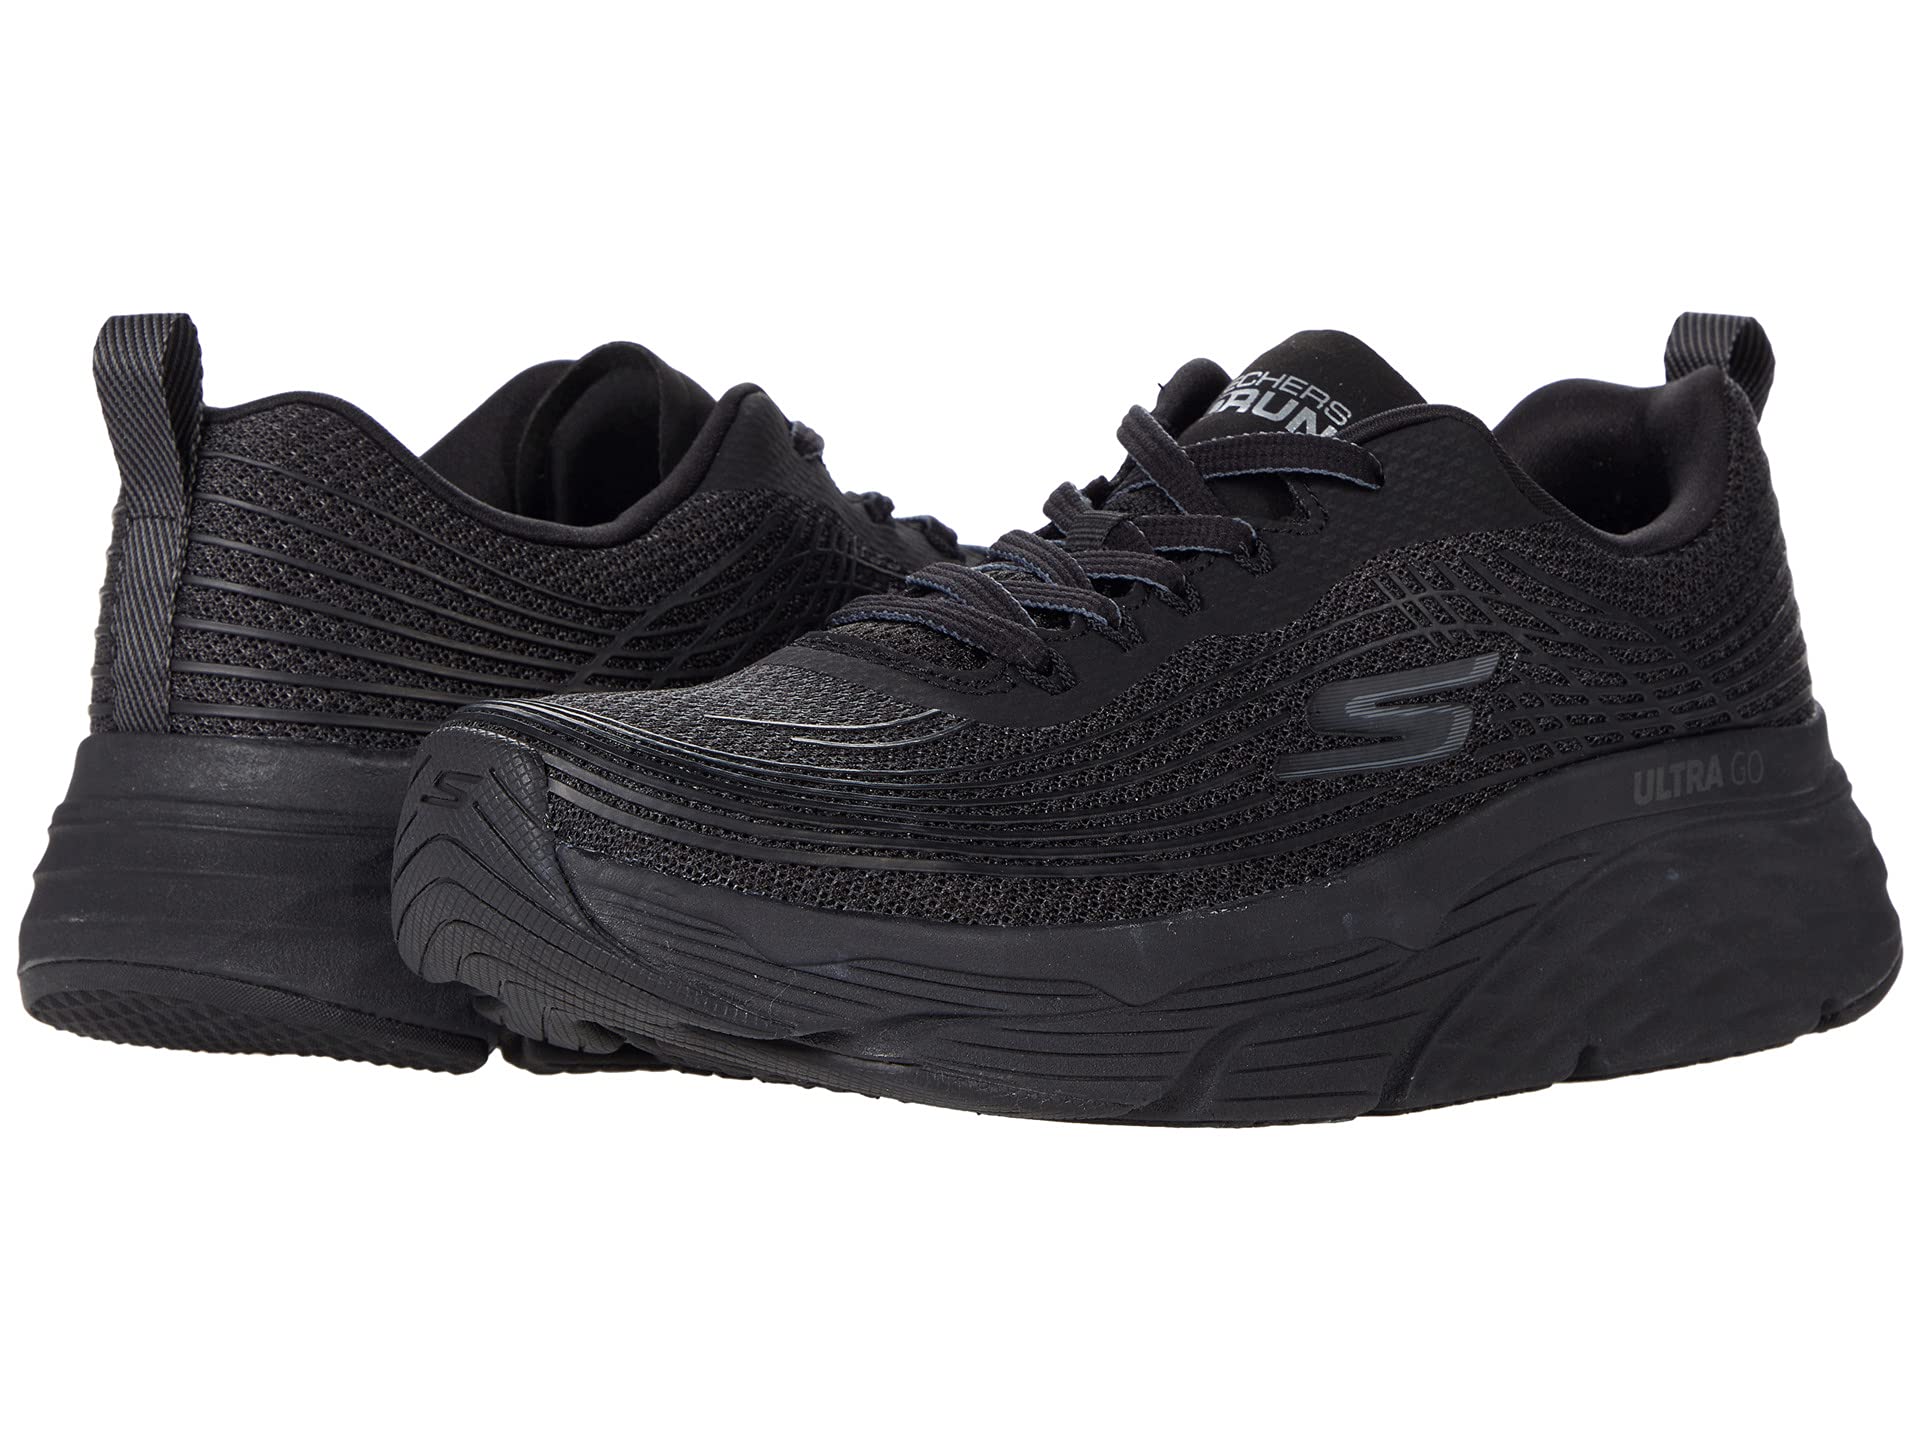 SKECHERS Men's Running Shoes | eBay